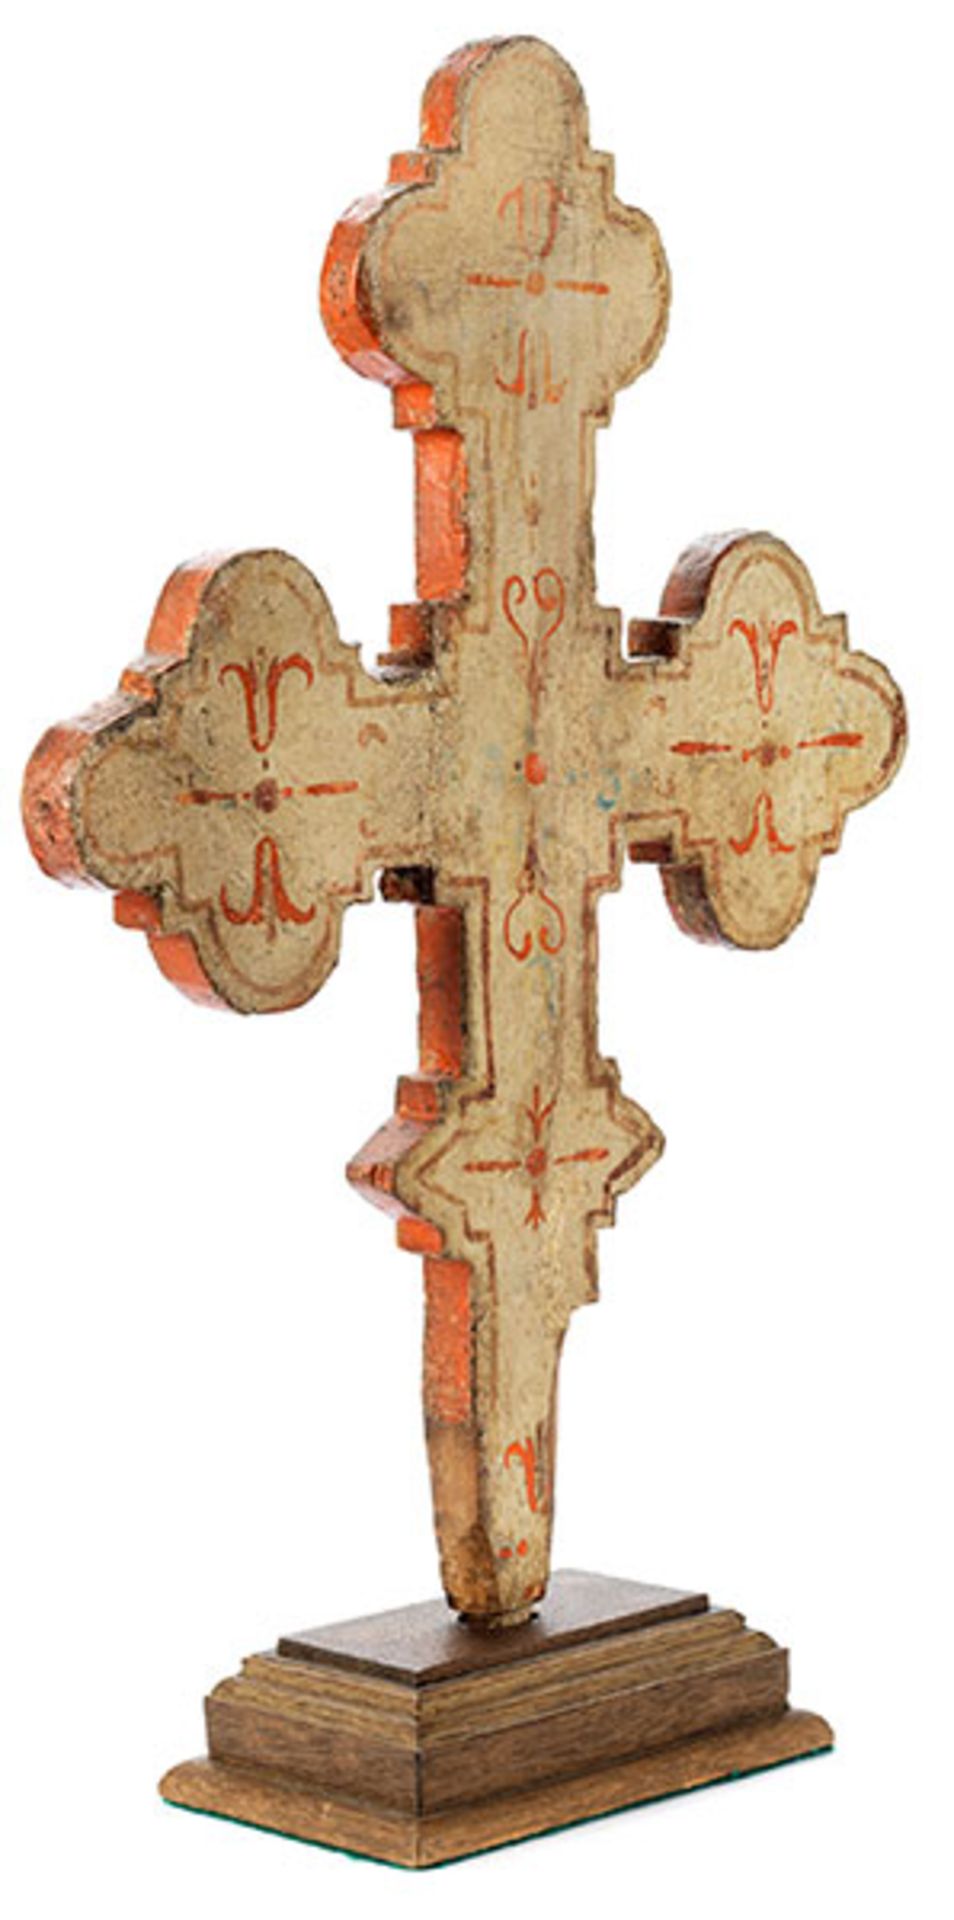 Sieneser Vortragekreuz des ausgehenden 15. Jahrhunderts Höhe: 48 cm. Breite: 32 cm. Holz, bemalt. - Bild 2 aus 3